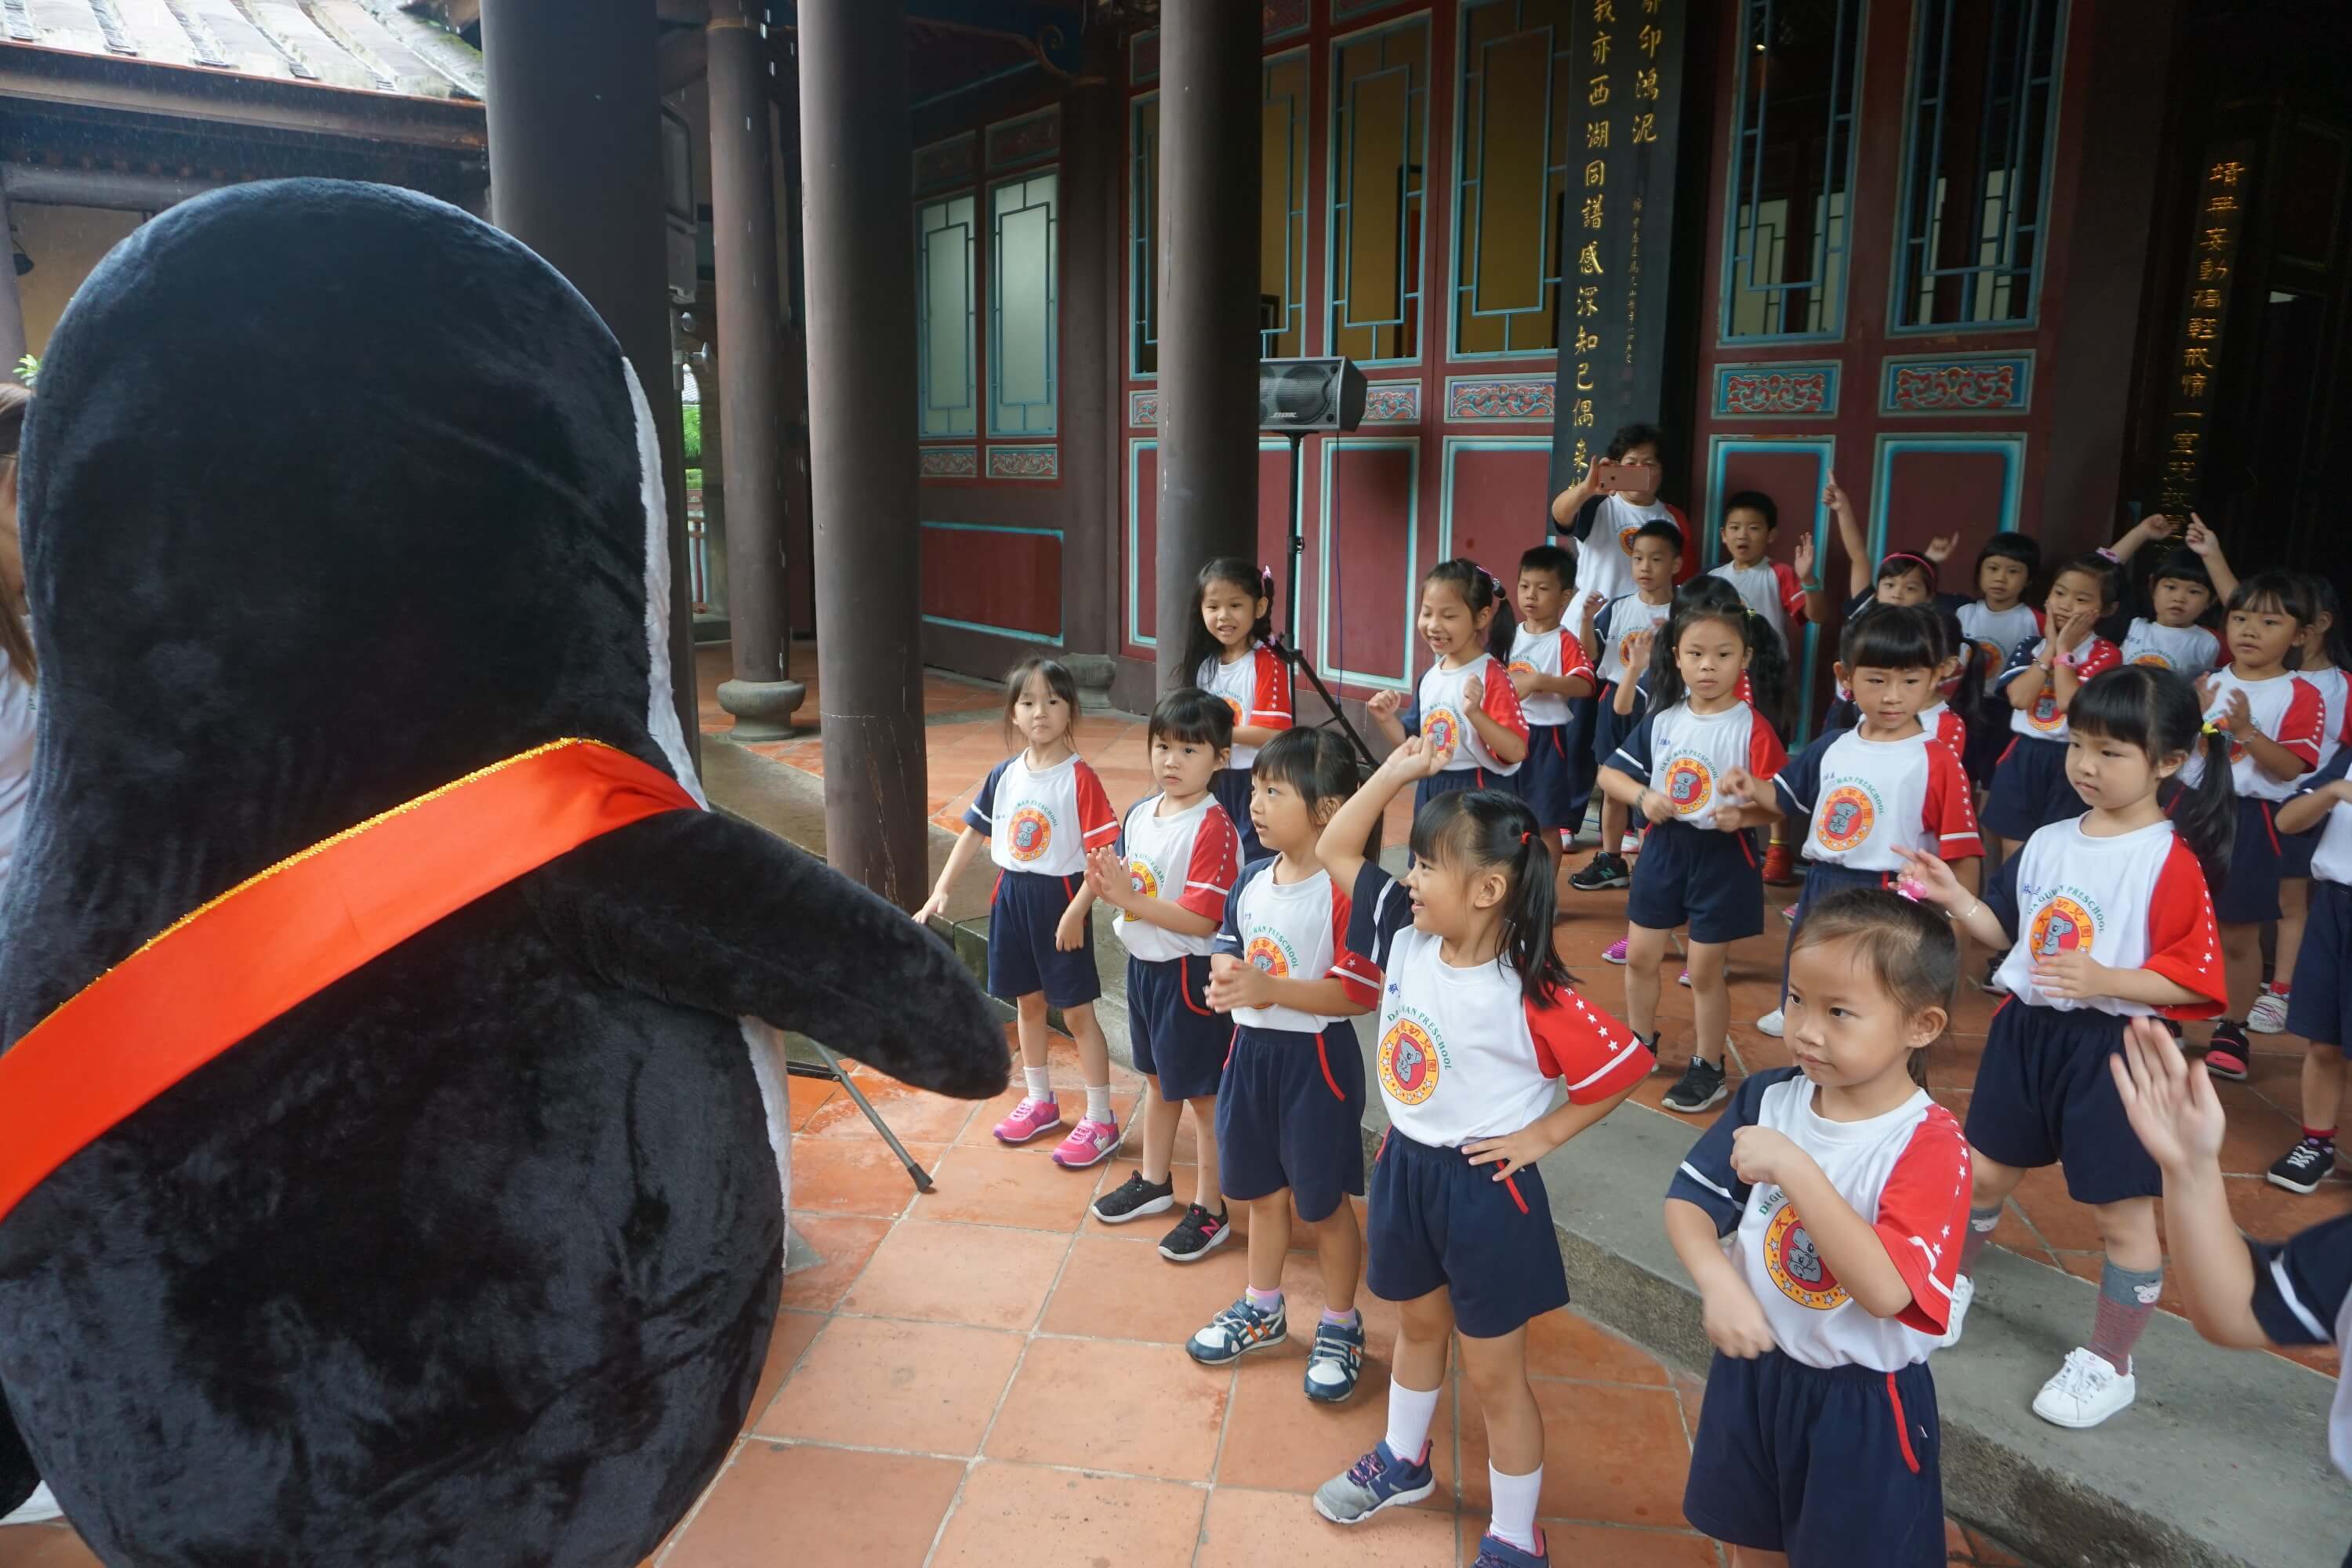 孩子們看到企鵝超開心，一起跳舞活動身體